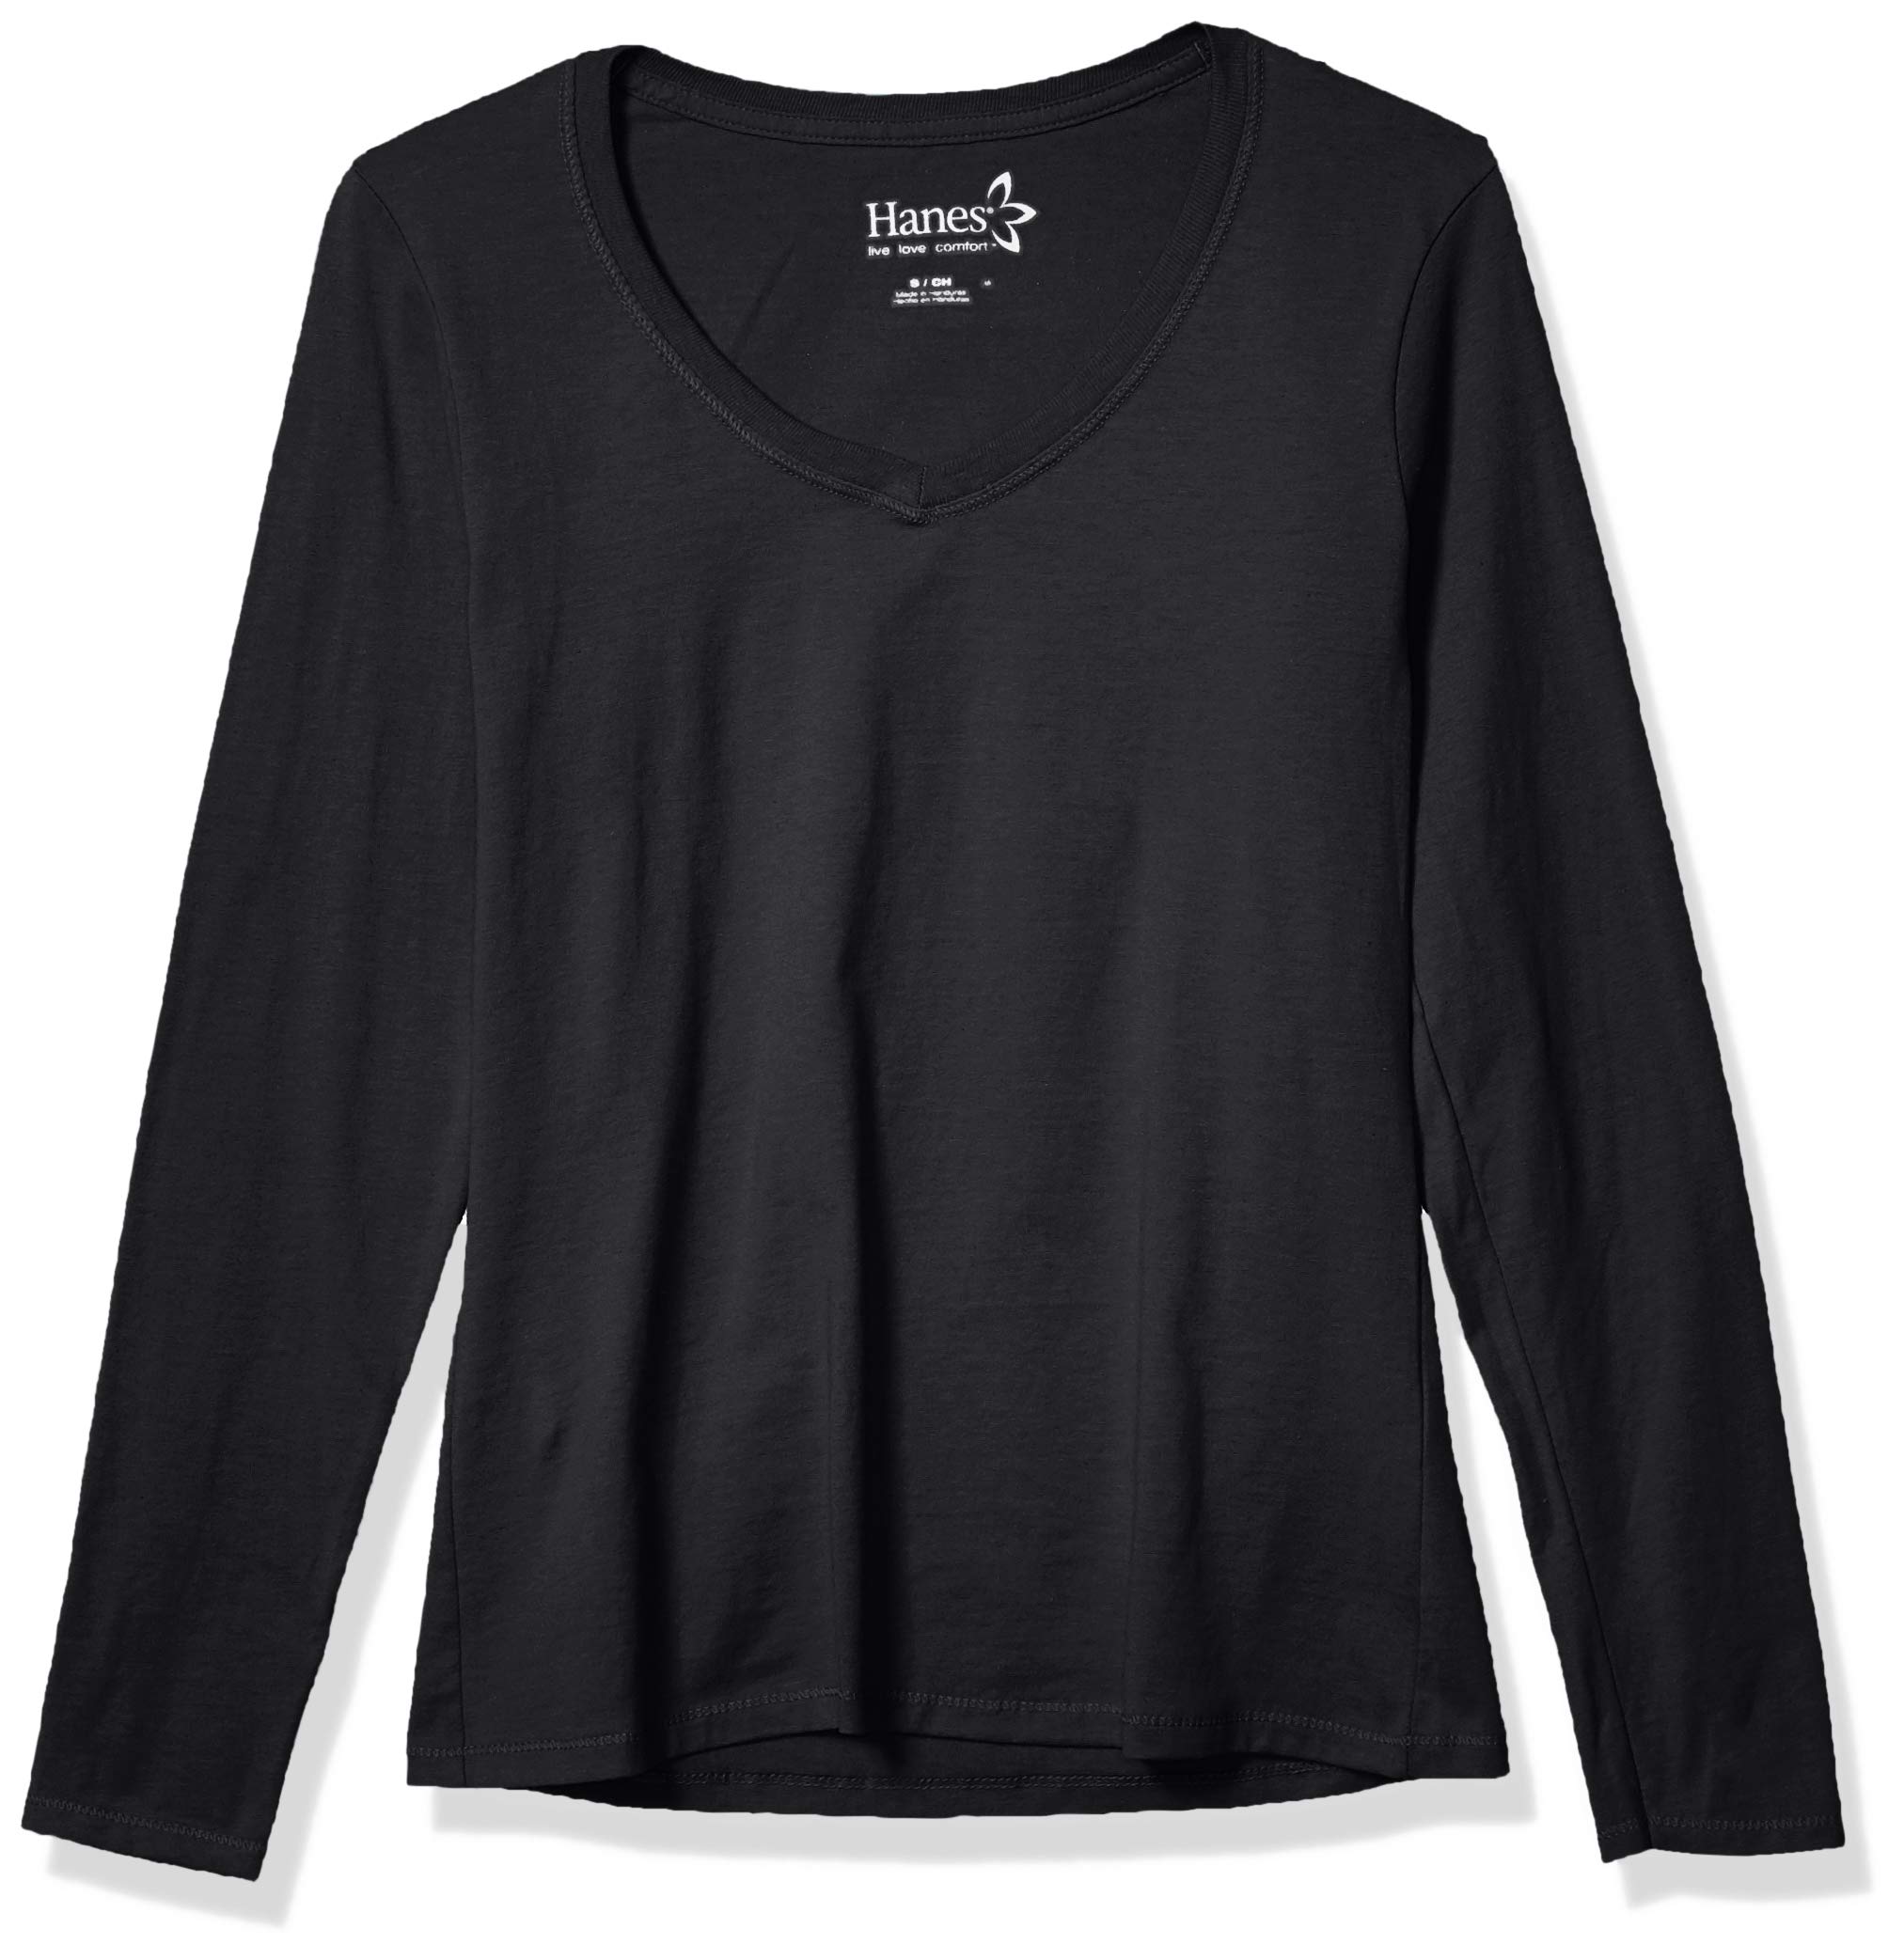 Hanes Originals Women’s Long Sleeve Cotton V-Neck T-Shirt, Lightweight V-Neck Tee, Modern Fit